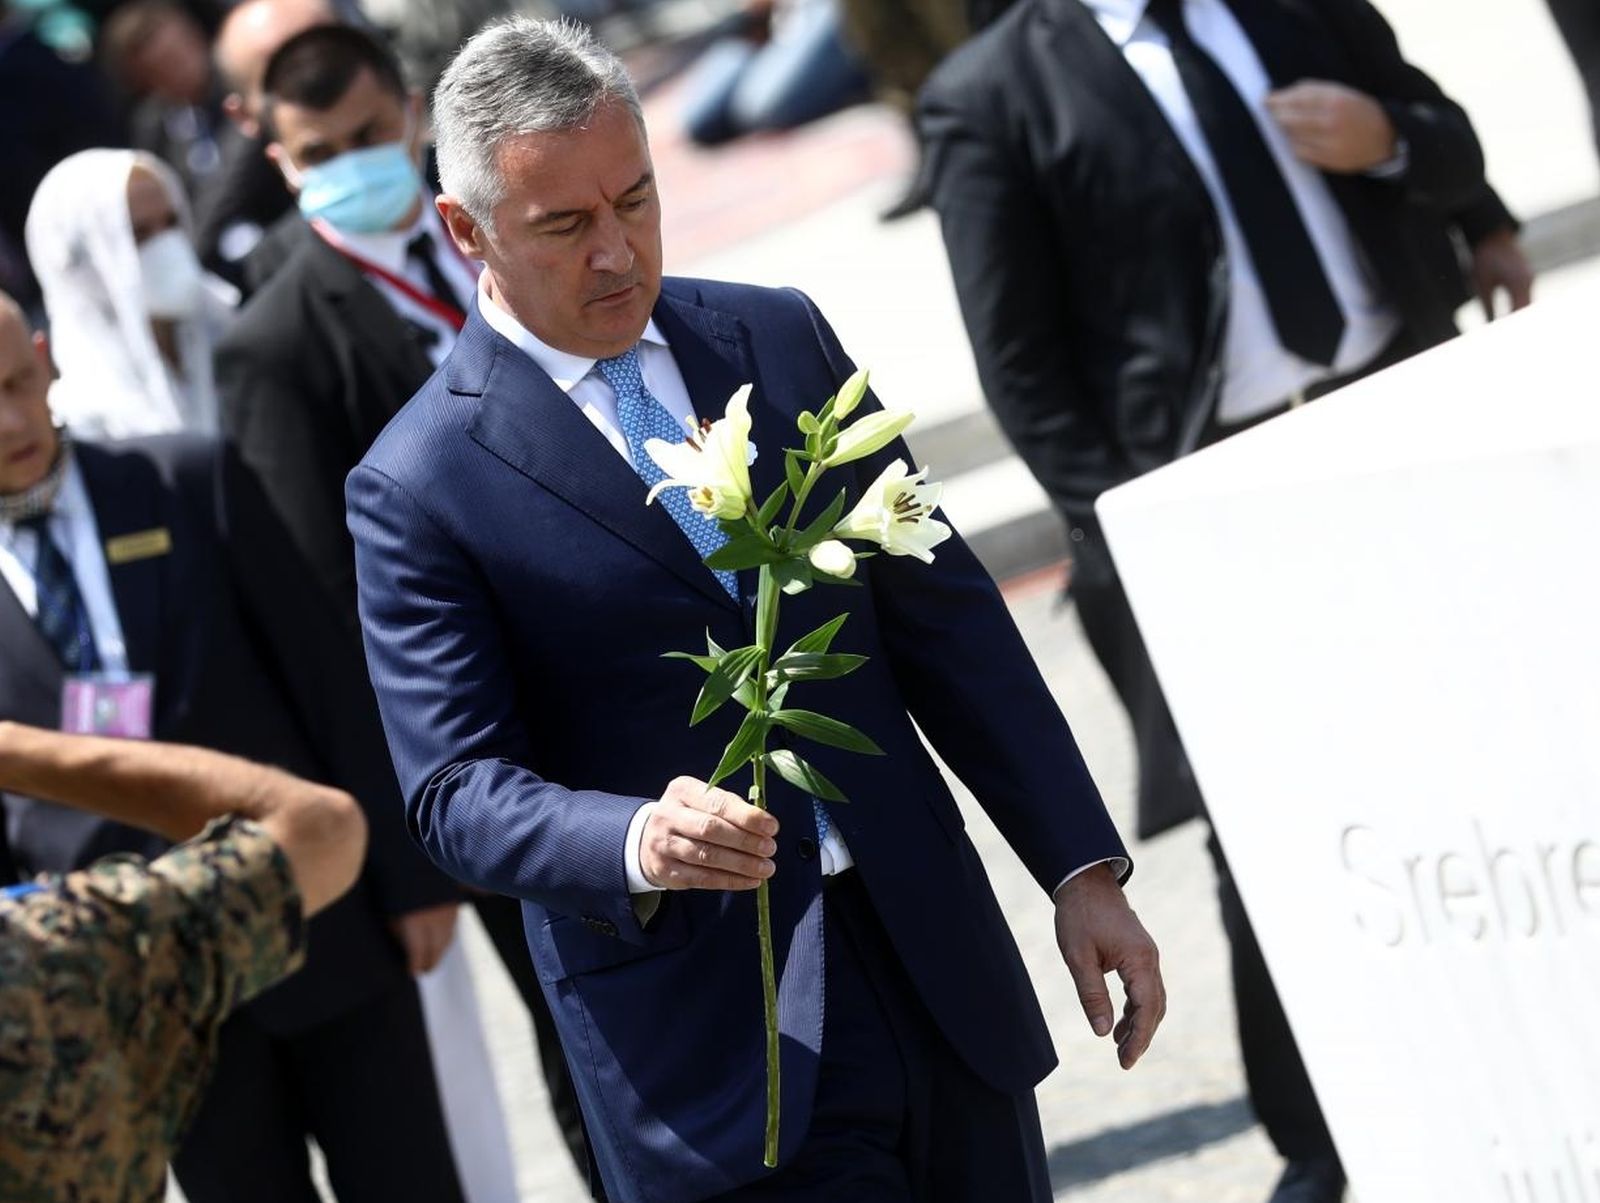 11.07.2021., Potocari, Bosna i Hercegovina - Brojne delegacije polozile su cvijece u znak sjecanja na ubijene u genocidu u Srebrenici. Milo Djukanovic
Photo: Armin Durgut/PIXSELL